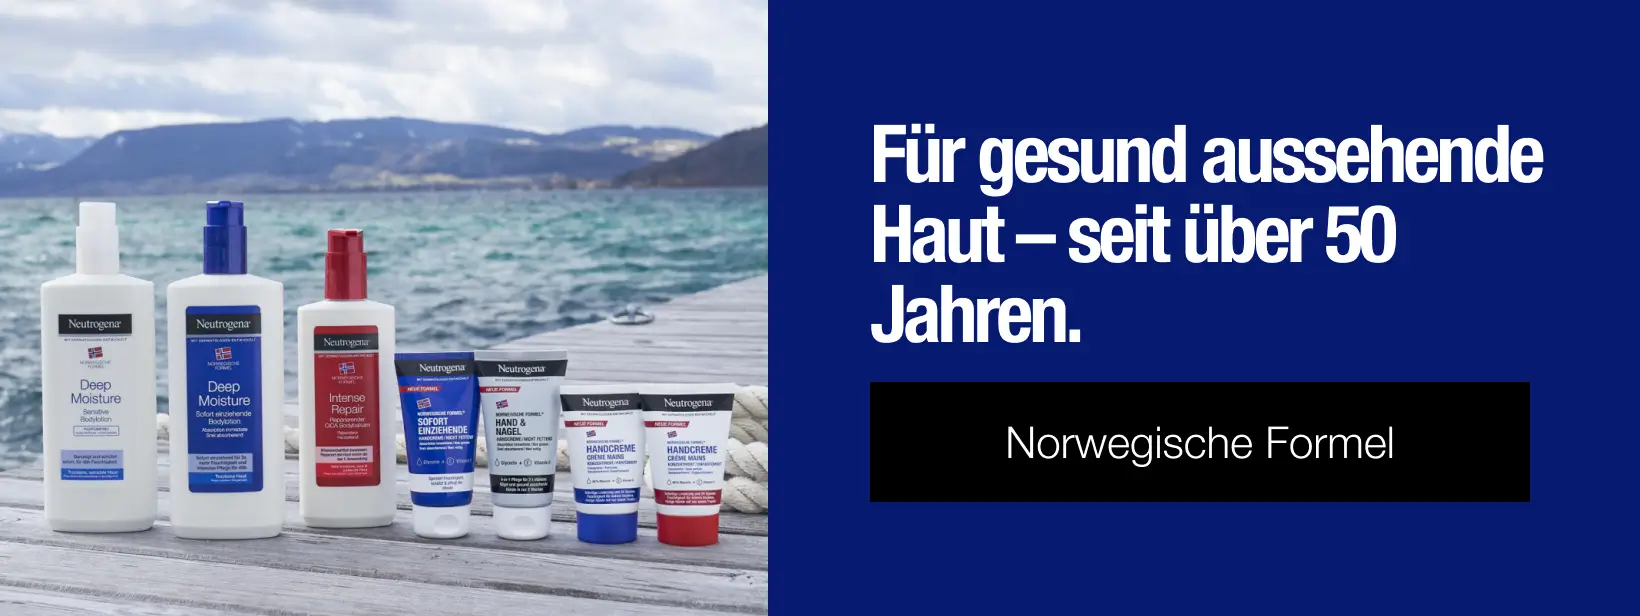 Norwegische Formel - Für gesund aussehende Haut - seit über 50 Jahren.